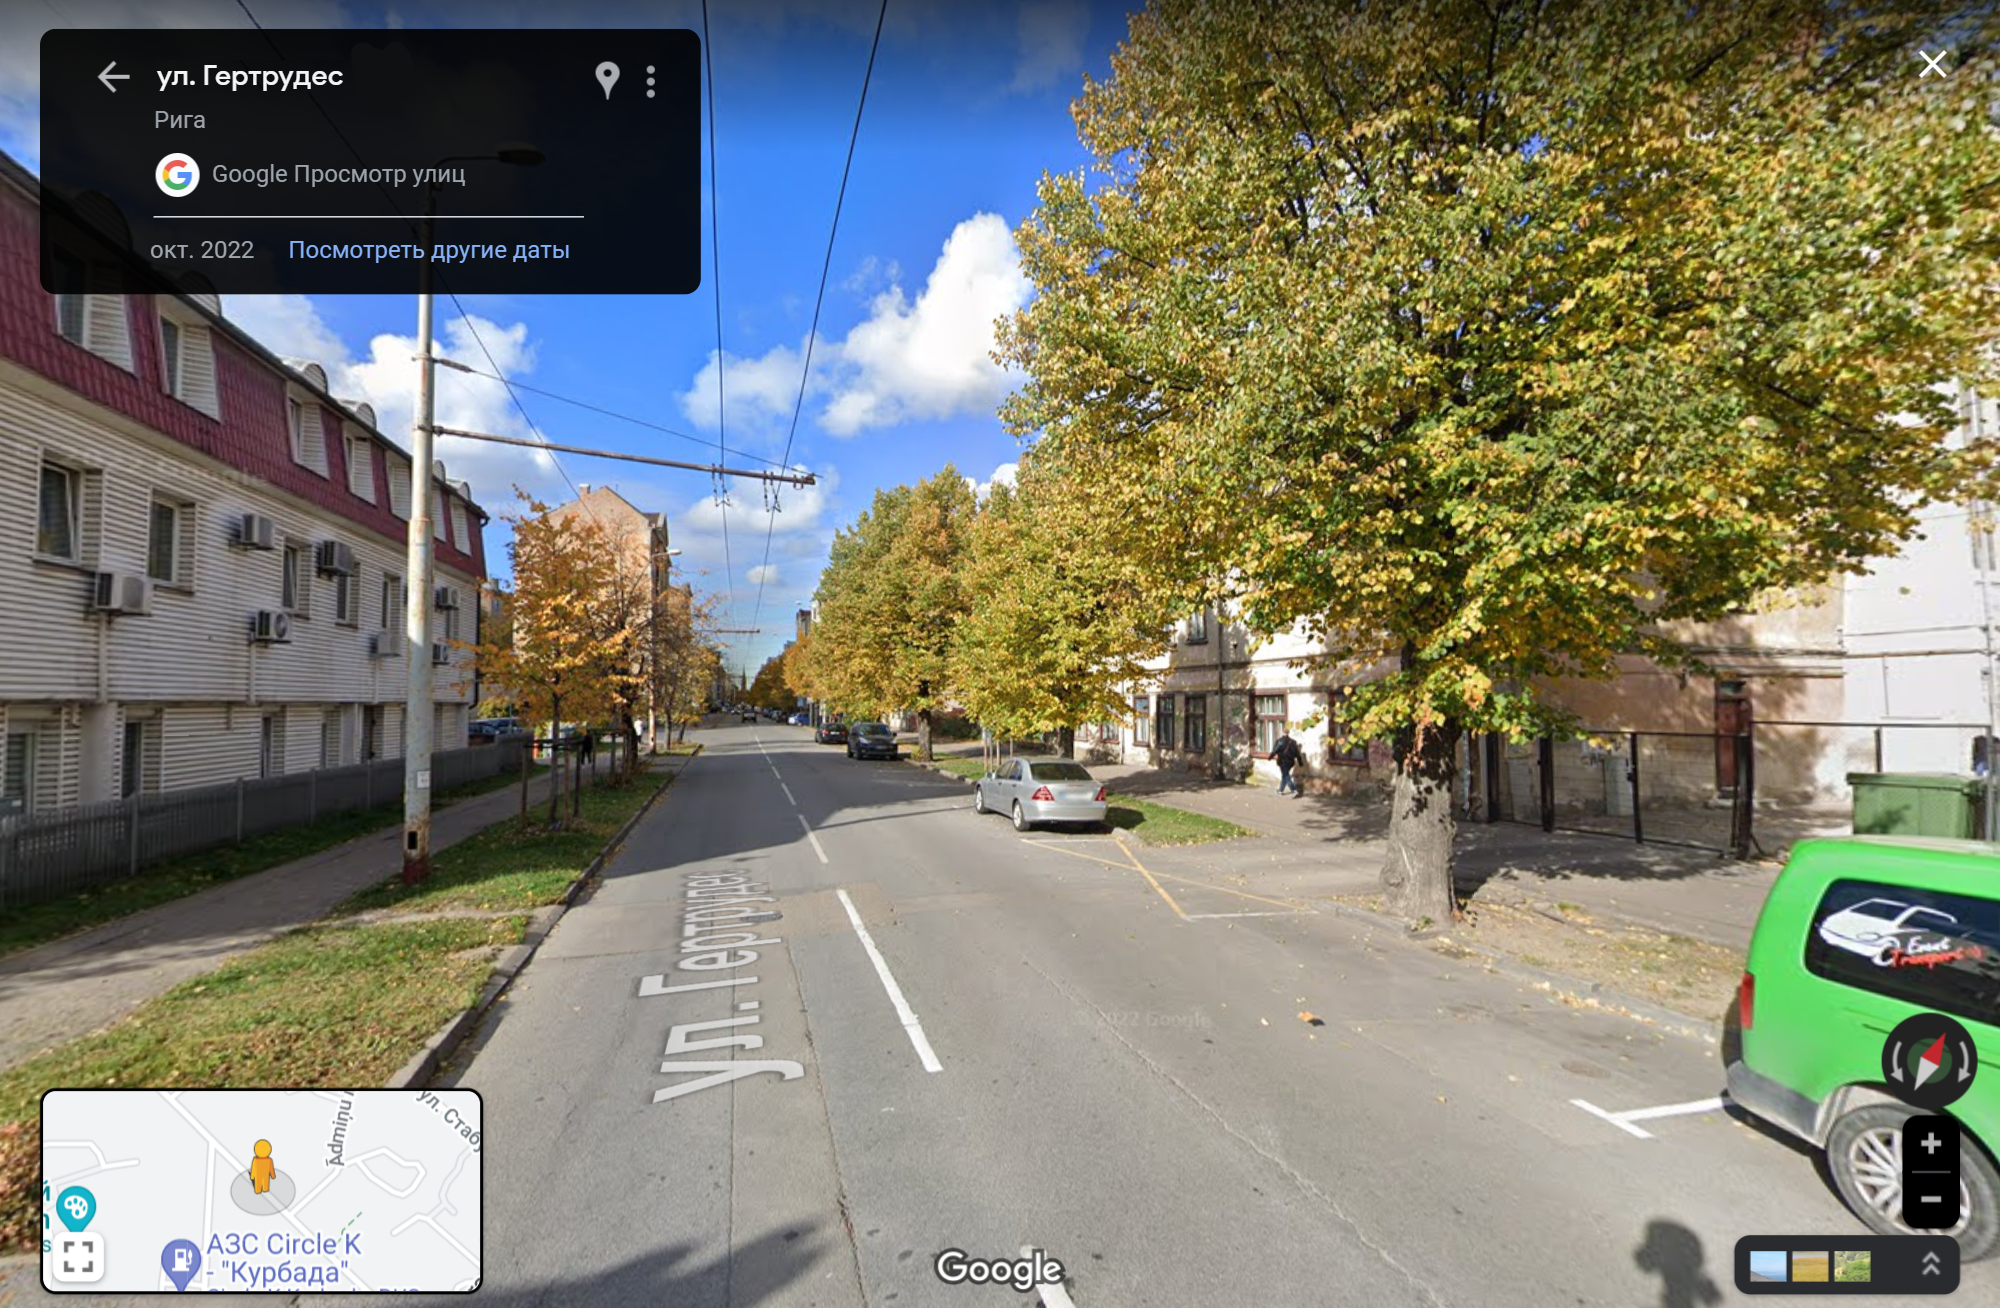 Улица, на которой расположен наш дом. Источник: google.com/maps